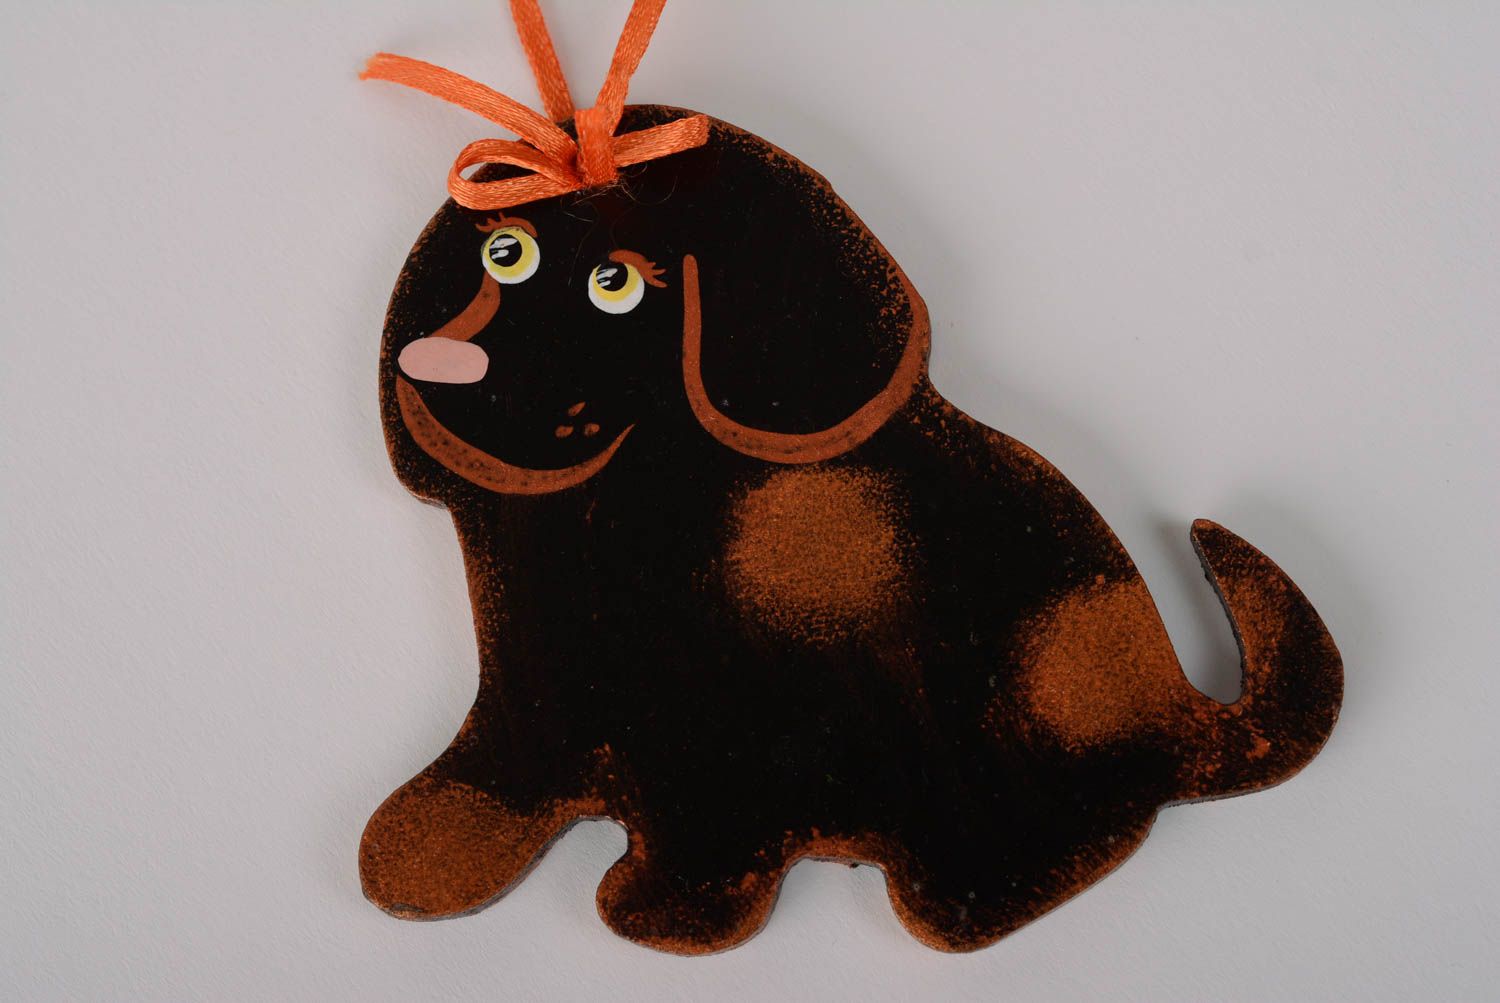 Интерьерная подвеска из ДВП расписанная акриловыми красками в виде шоколадного пса  фото 1